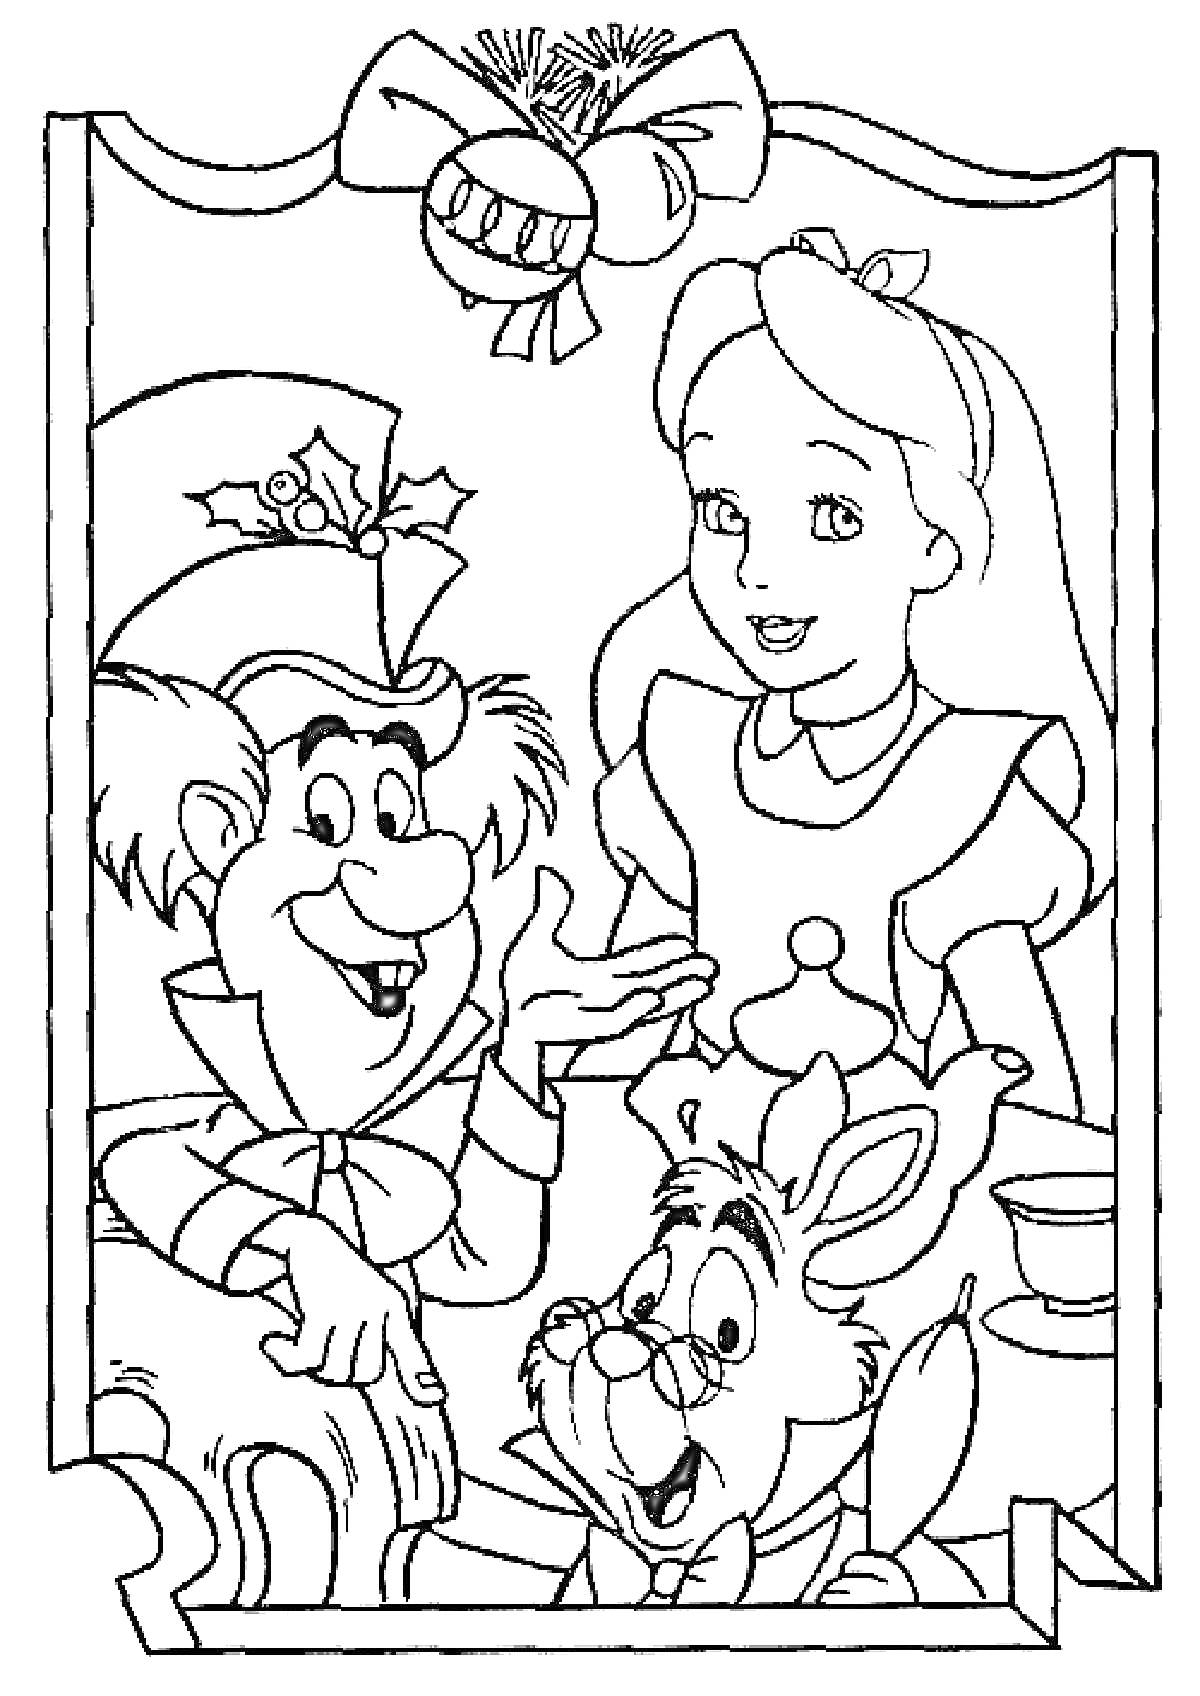 Раскраска Алиса, Безумный Шляпник и Белый Кролик за накрытым столом в обрамлении с бантами и еловыми веточками